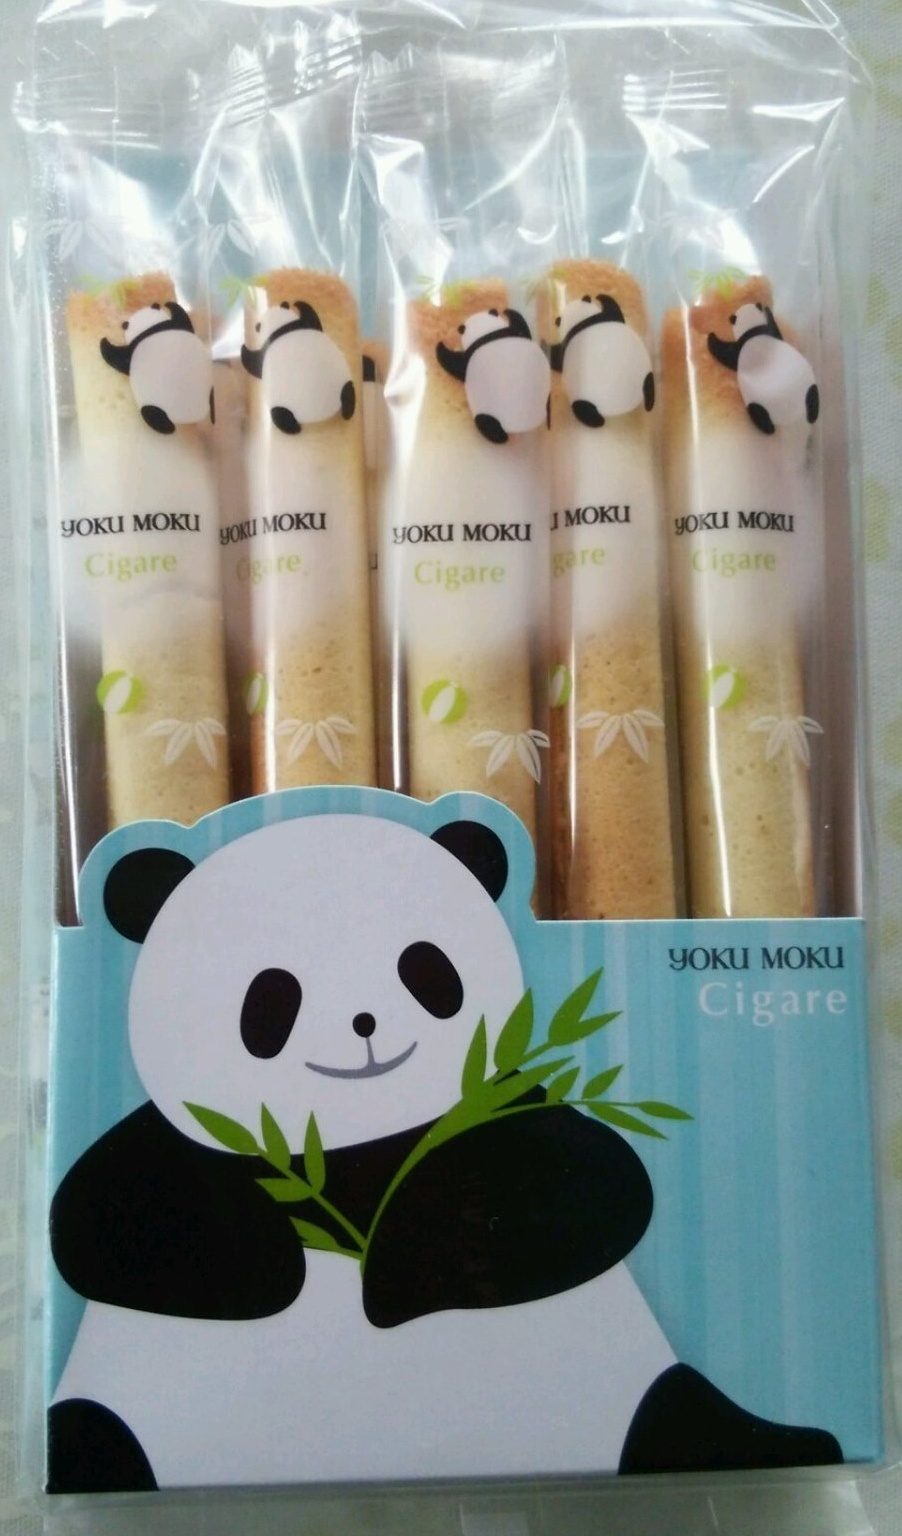 Yoku Moku 熊貓雪茄餅